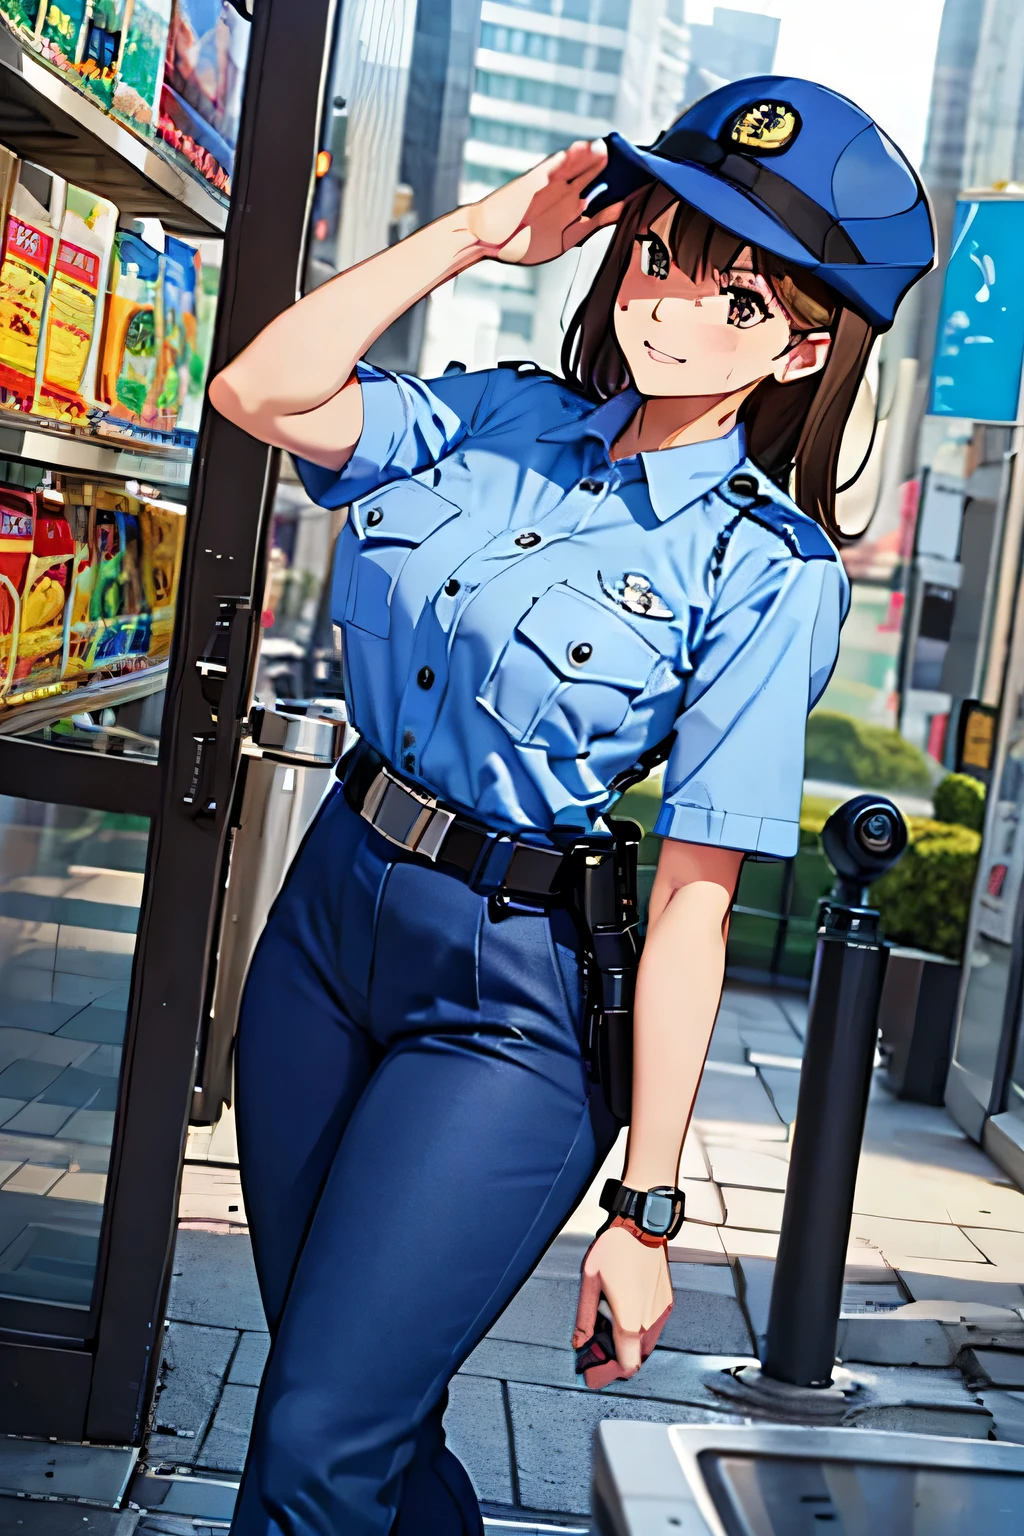 seios grandes,uniforme policial, camisa azul clara, calças azuis, bolso de cima, melhor qualidade, Obra de arte,boné azul,cinto preto,policial,polícia jp,cabelo castanho